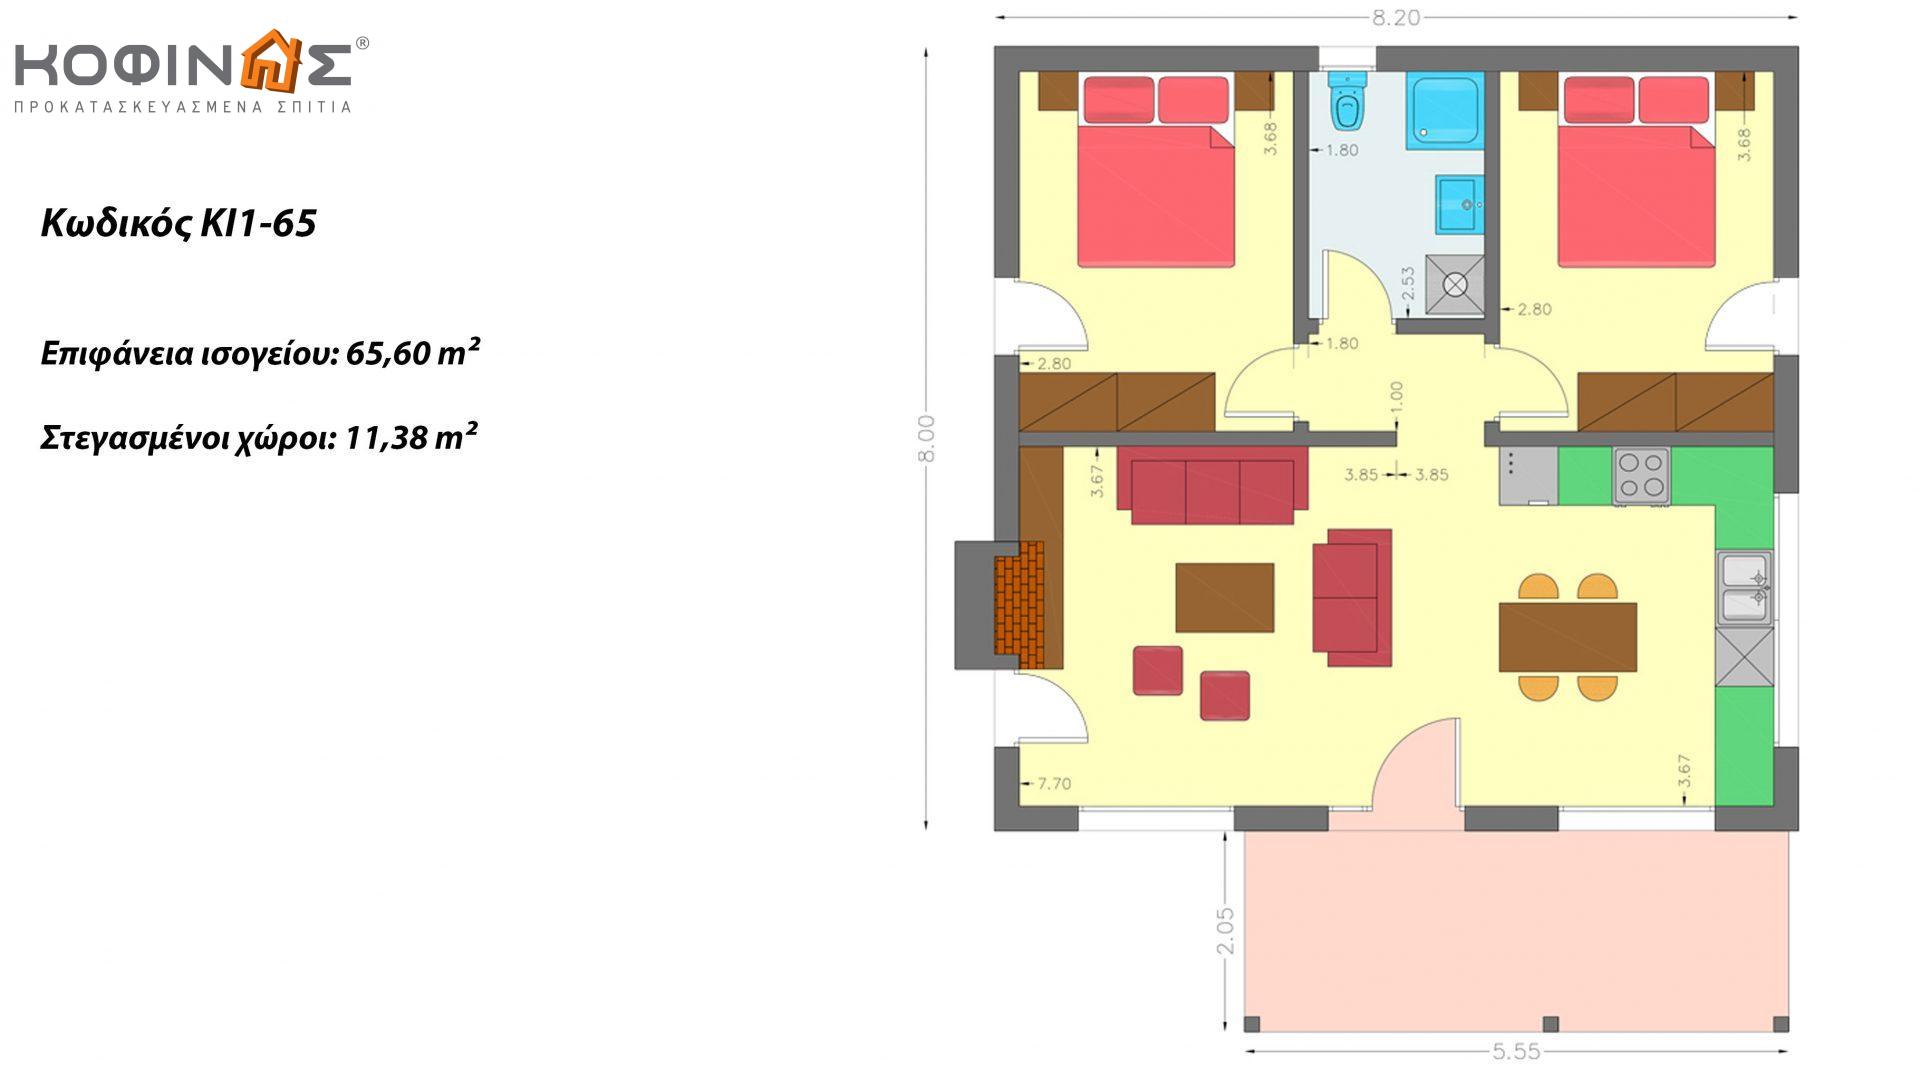 Ισόγεια Κατοικία KI1-65 συνολικής επιφάνειας 65,60 τ.μ., στεγασμένοι χώροι 11,38 τ.μ